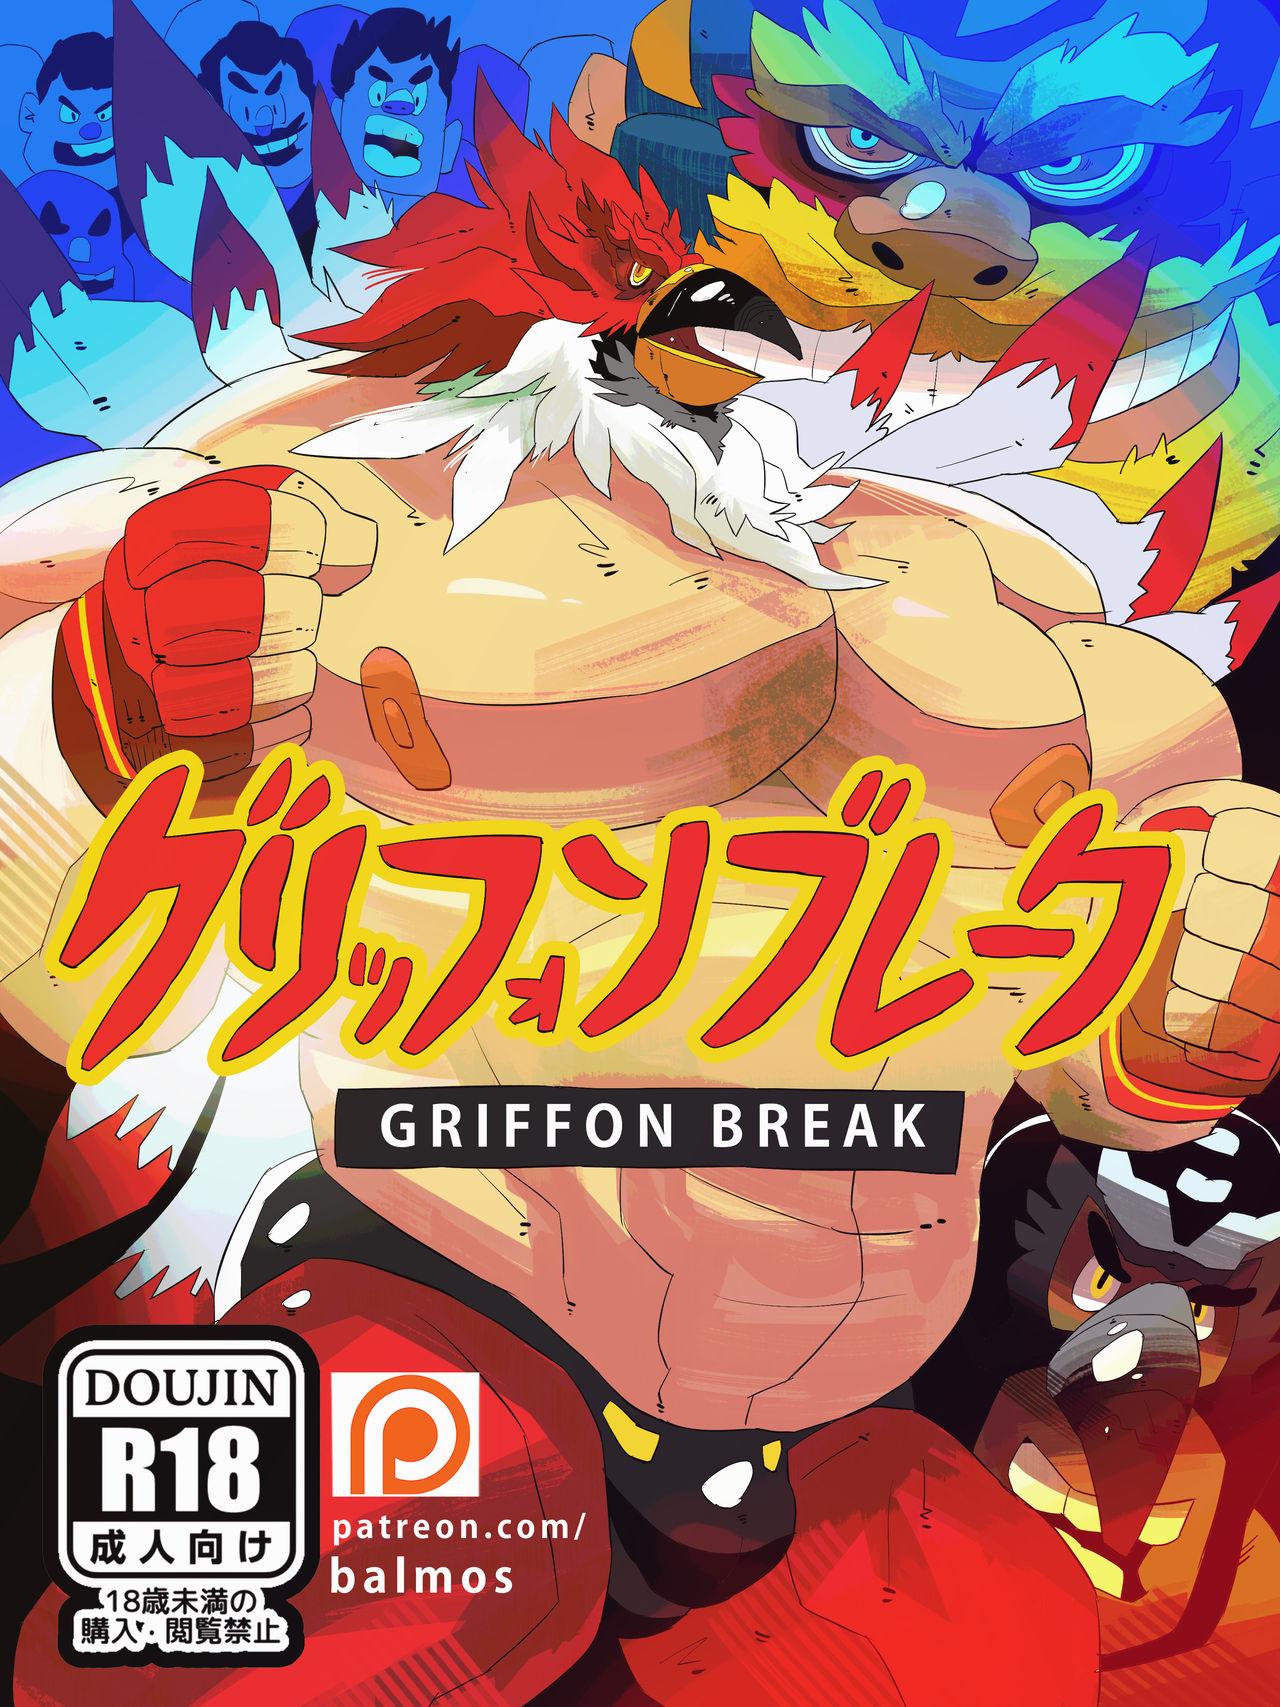 Griffon Break HD 0